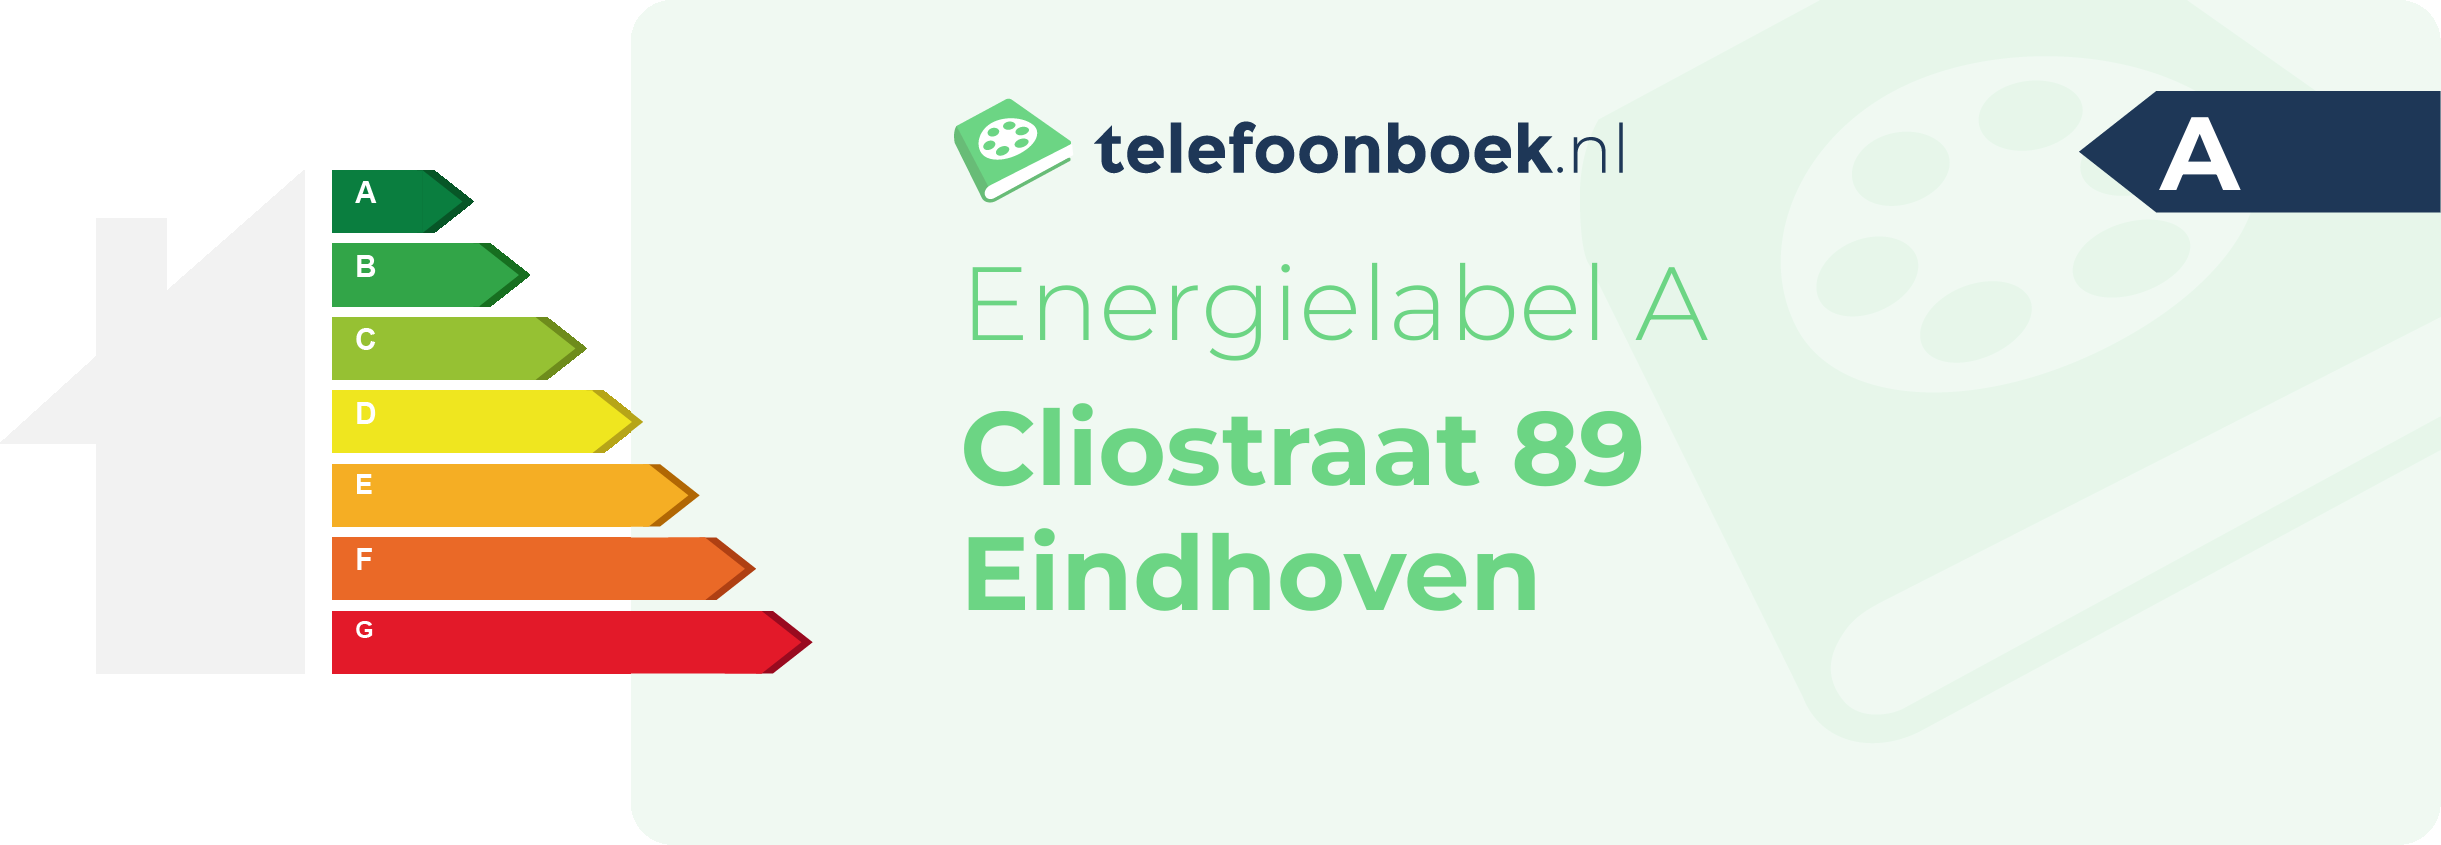 Energielabel Cliostraat 89 Eindhoven